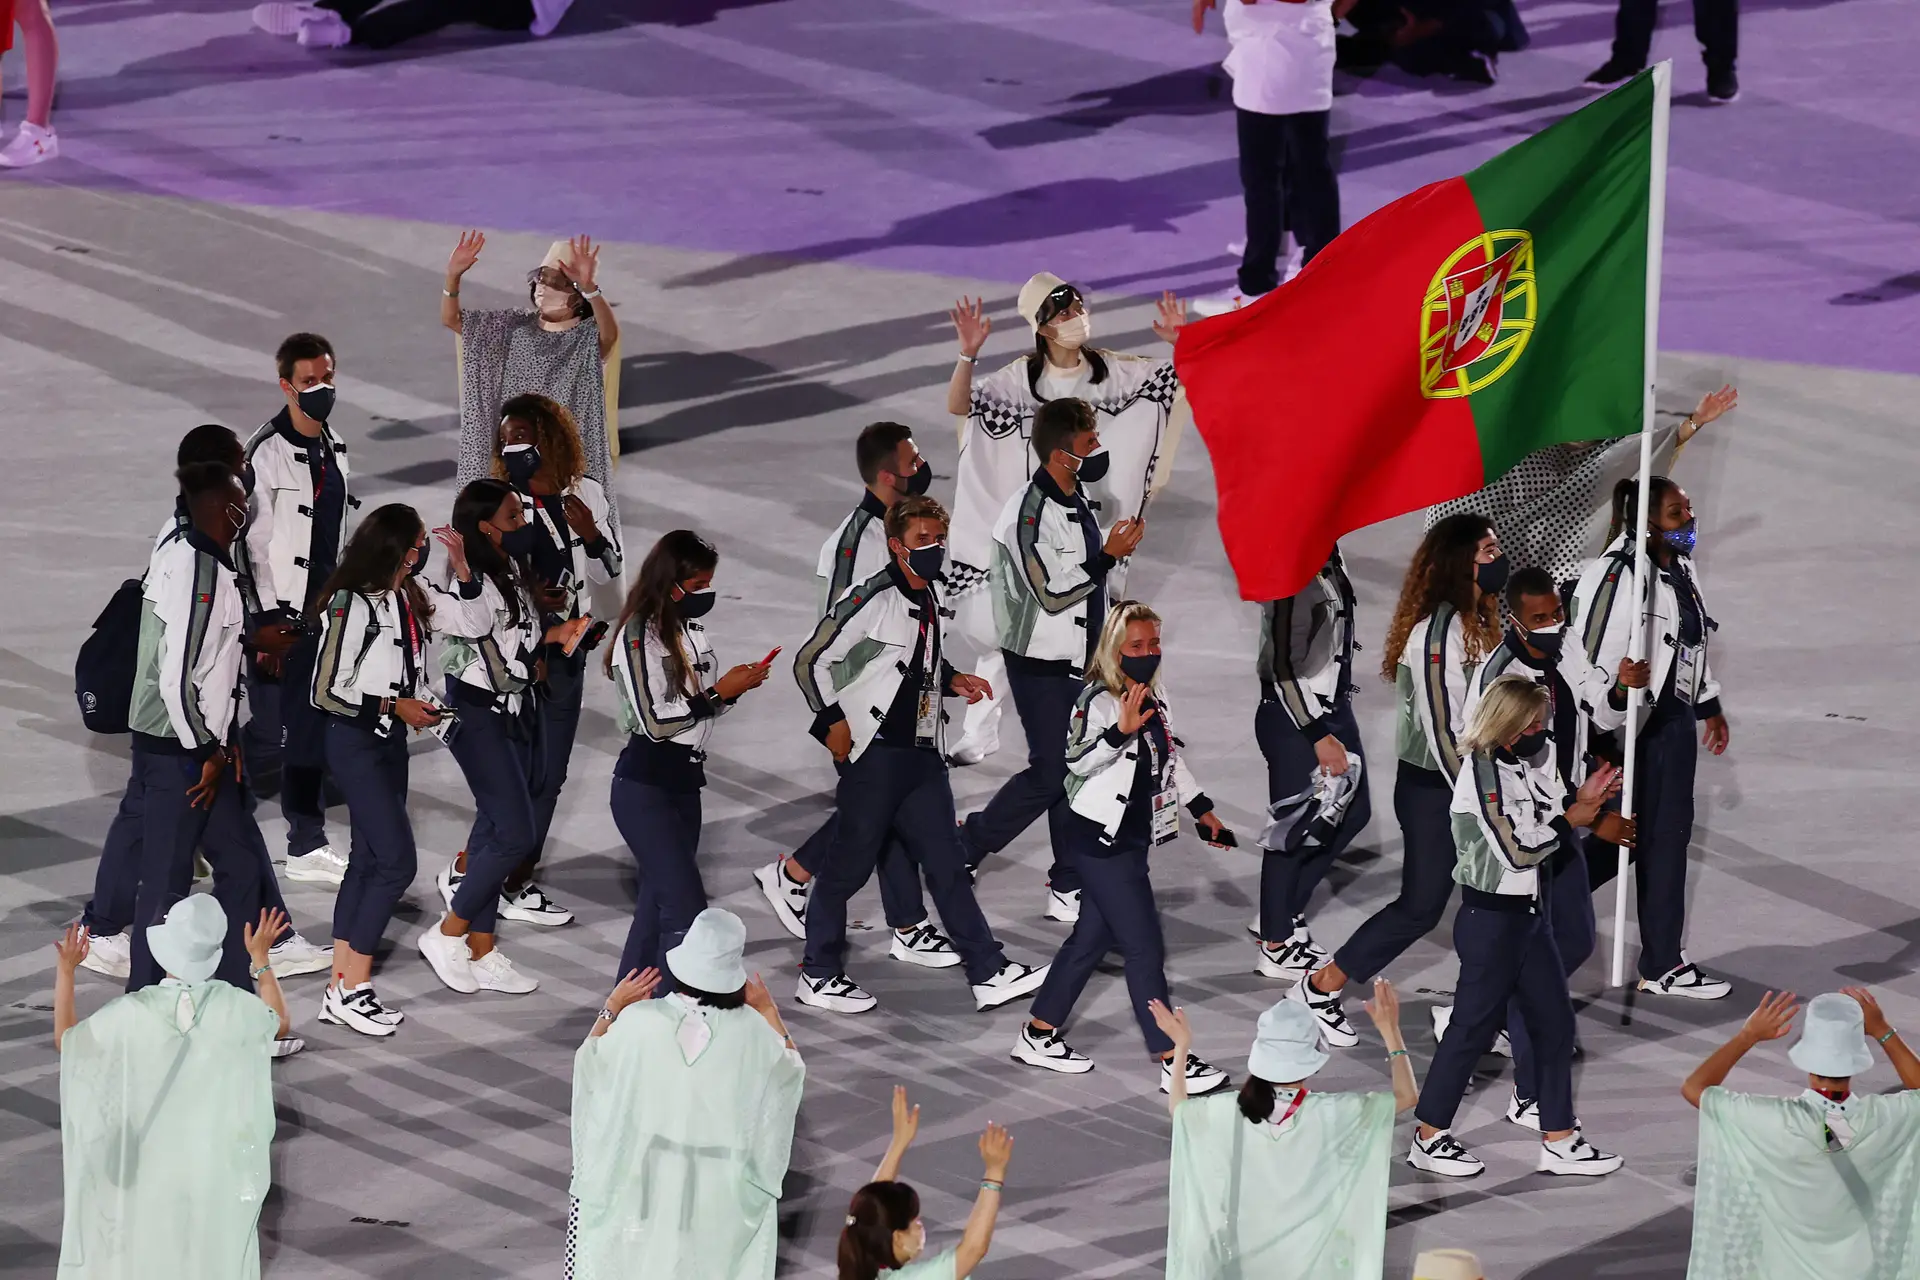 Portugal eliminado pela Alemanha (4-0) nos Jogos Olímpicos